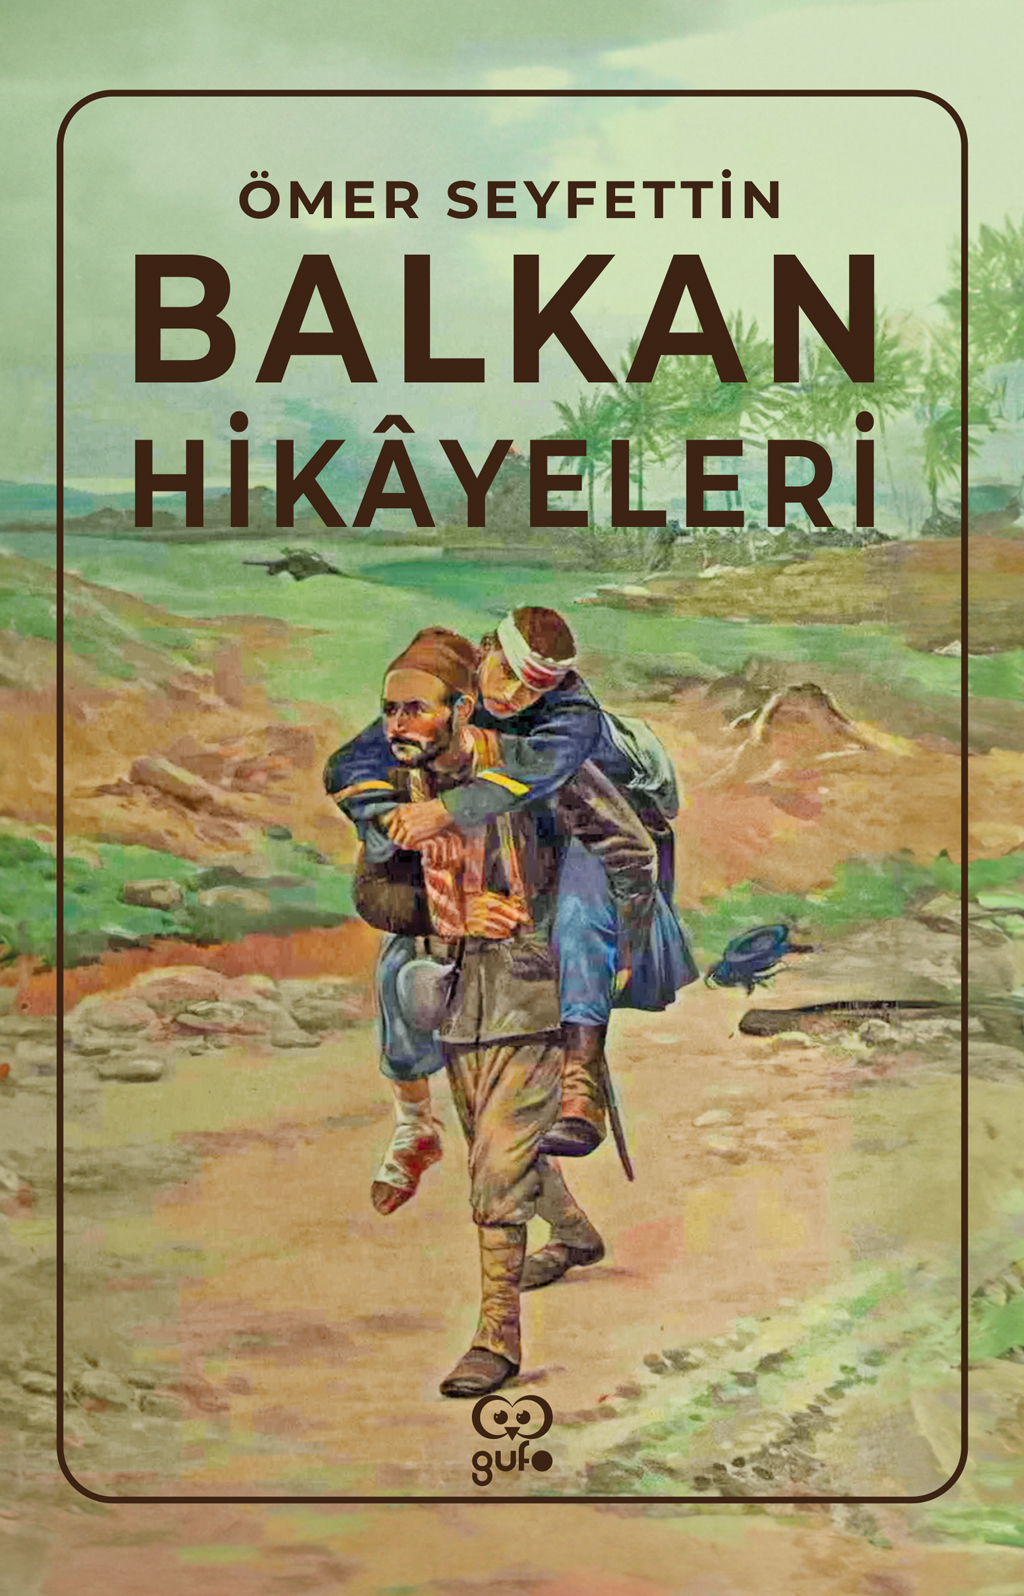 Balkan Hikayeleri